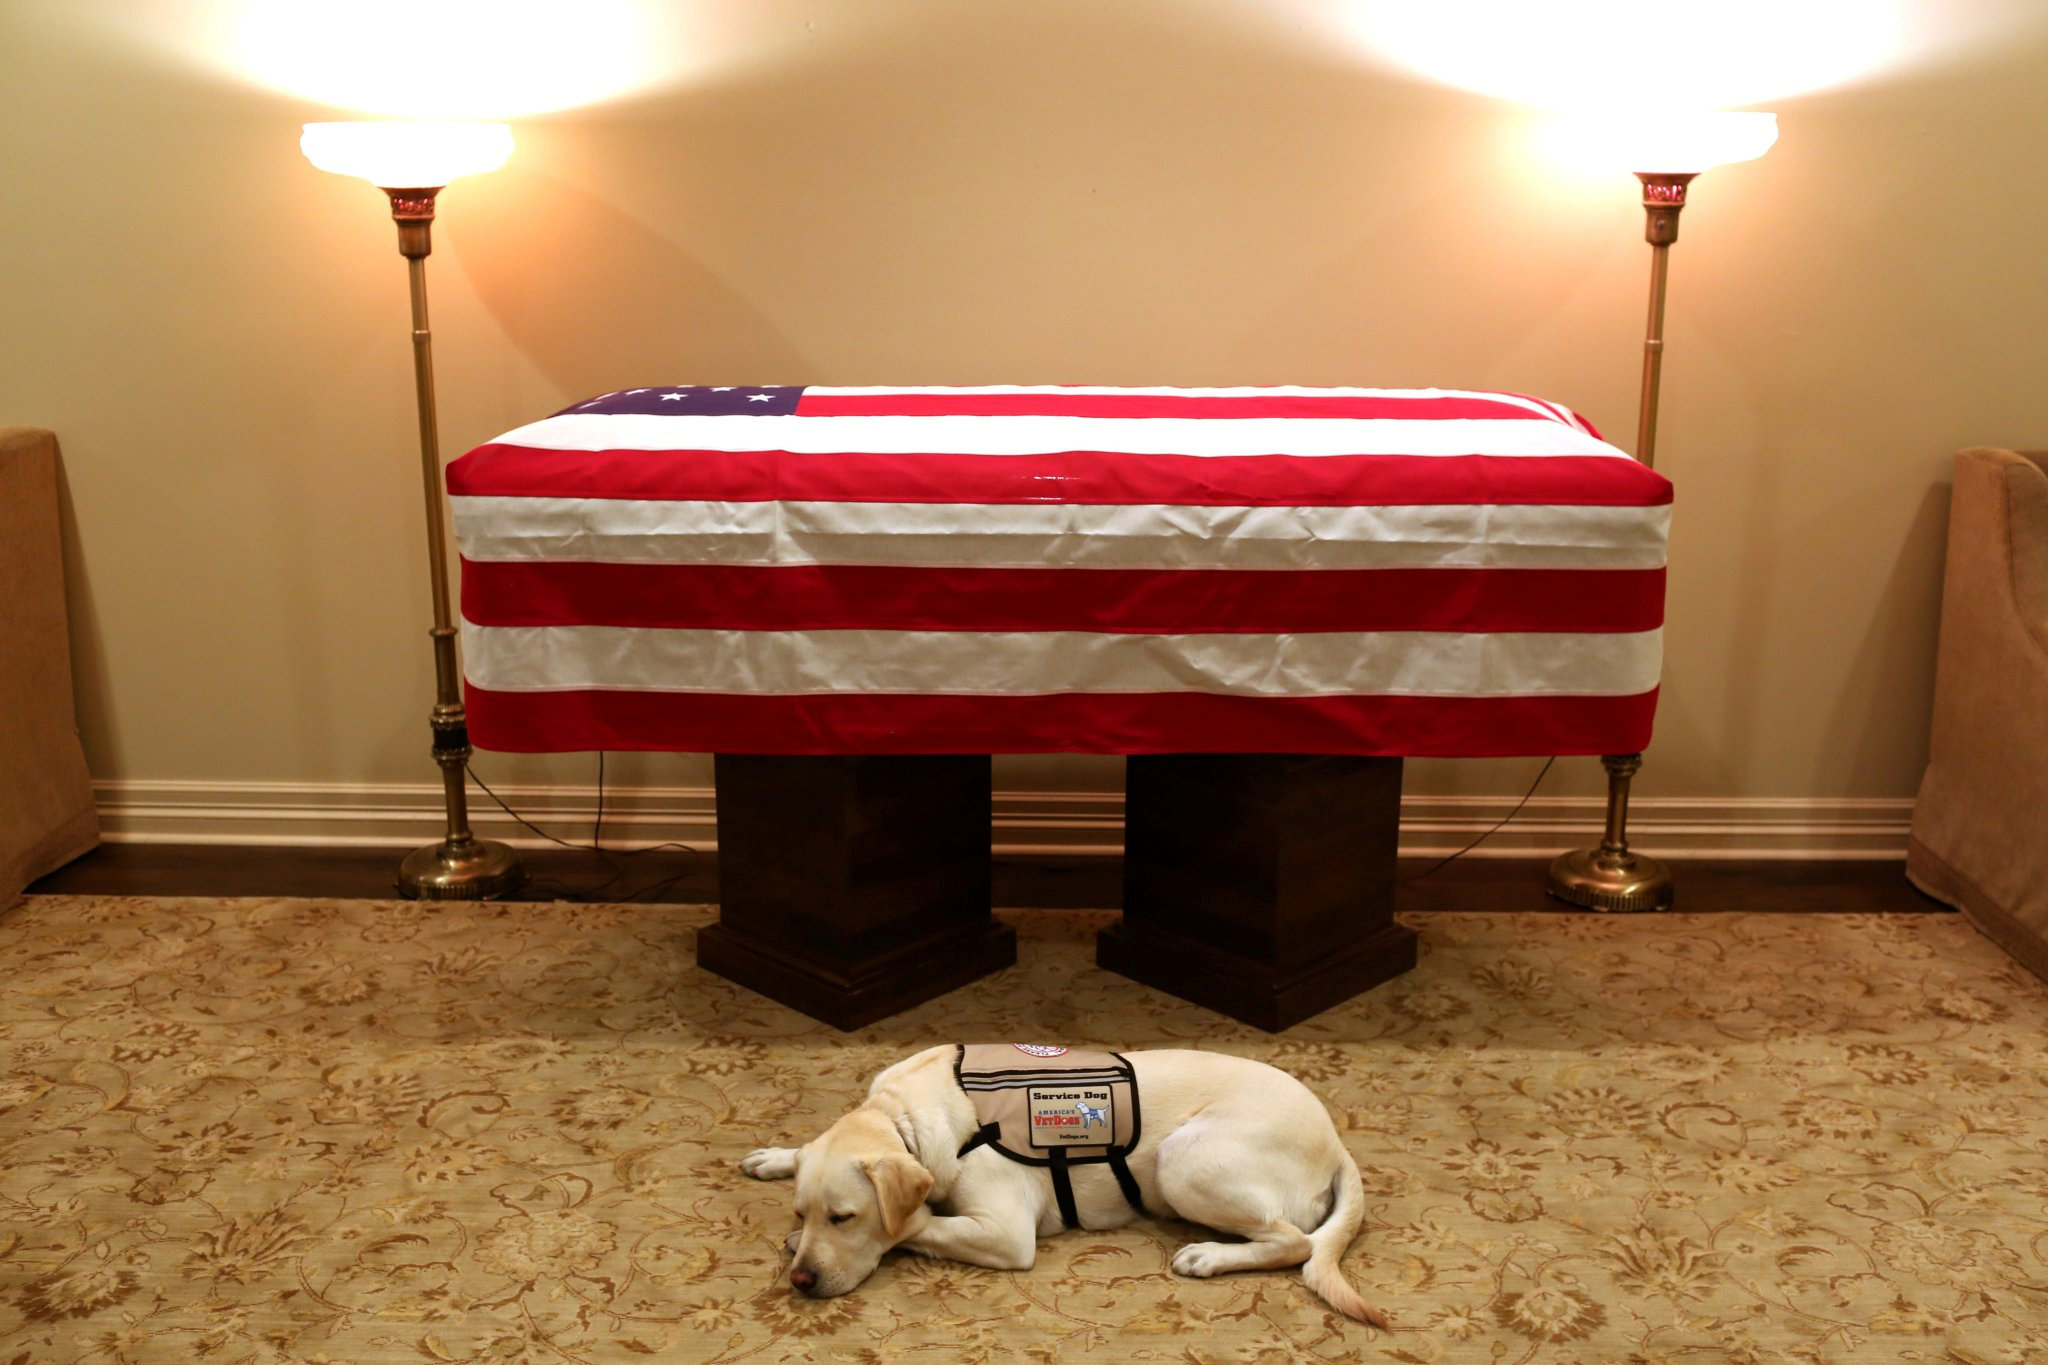 ¿Qué pasará ahora con Sully, el perro labrador de George H. W. Bush?